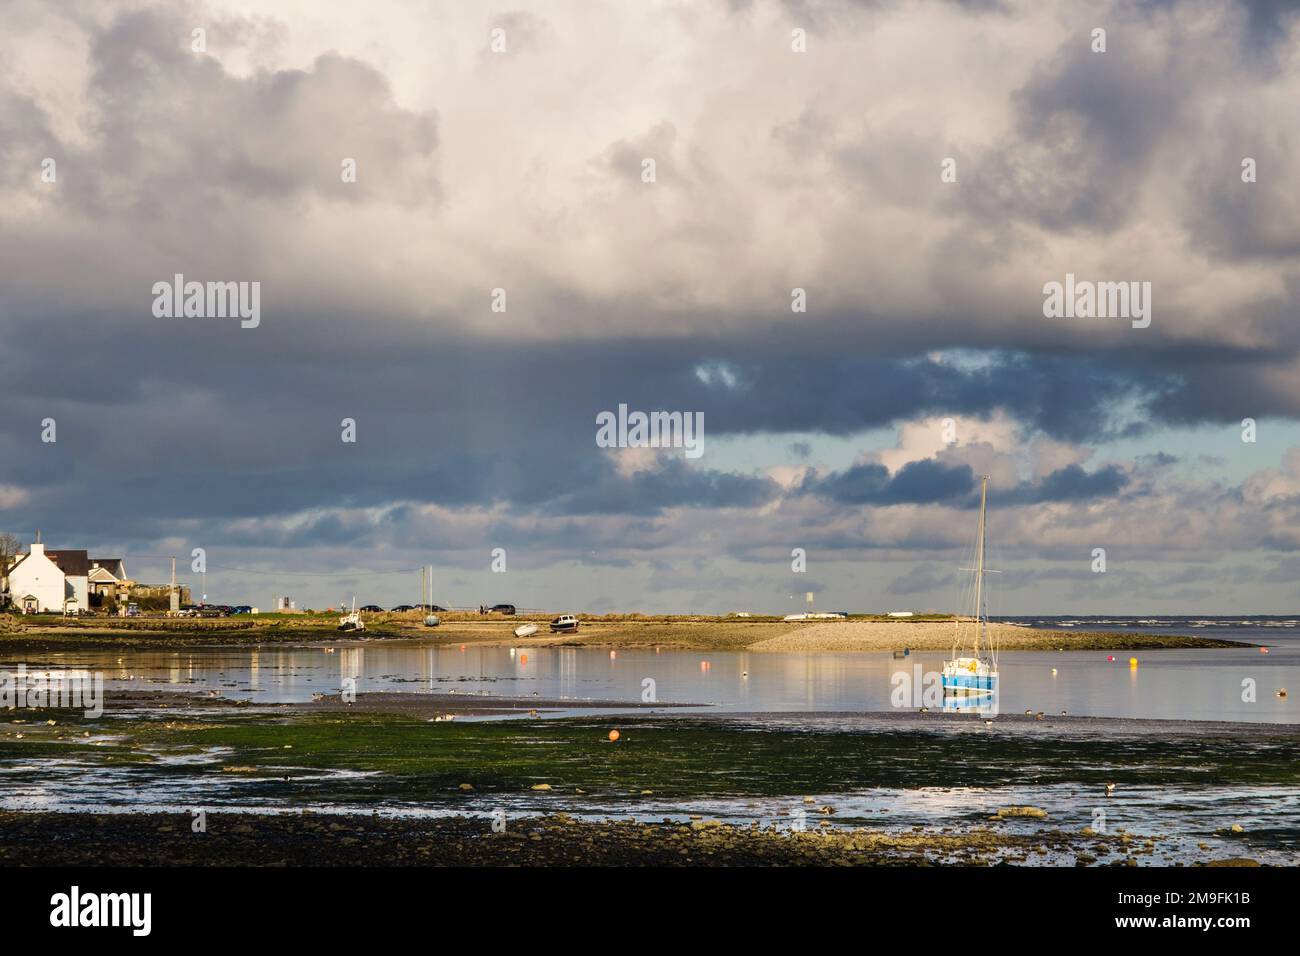 Les barboteuse se nourrissent sur le rivage devant la marée entrante à Red Wharf Bay (Traeth Coch), Benllech, île d'Anglesey (Ynys mon), pays de Galles, Royaume-Uni, Britai Banque D'Images